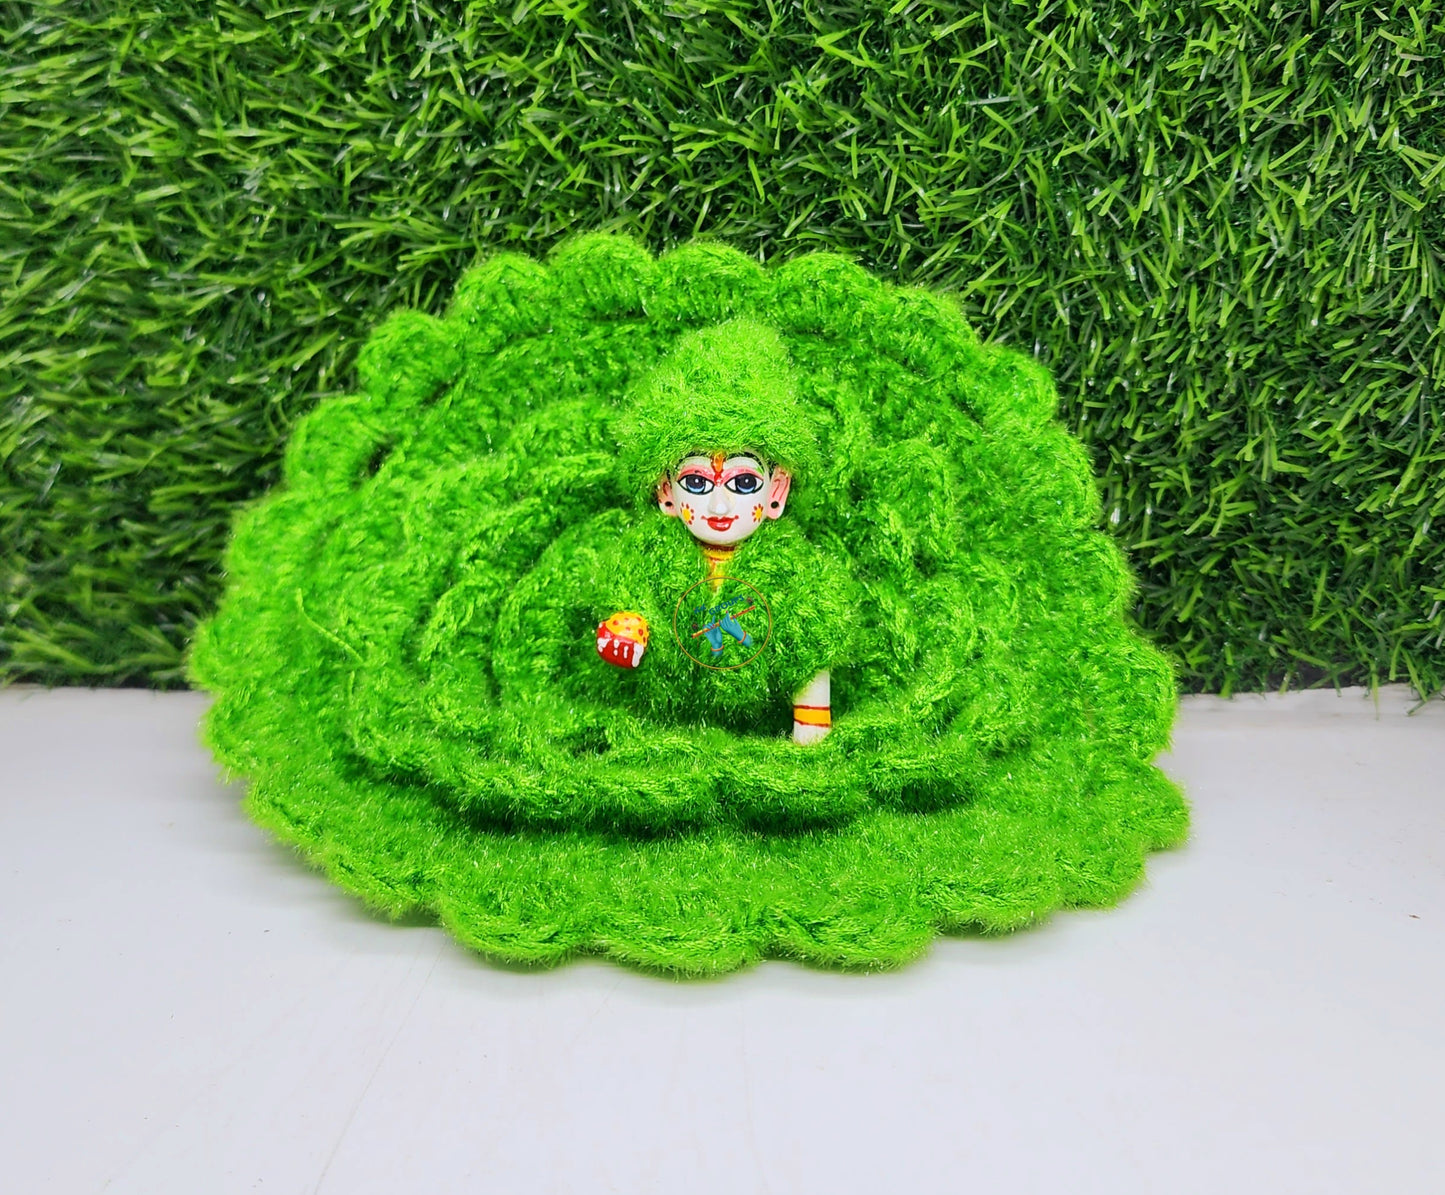 Green Designer Woolen Dress for Laddu Gopal ji